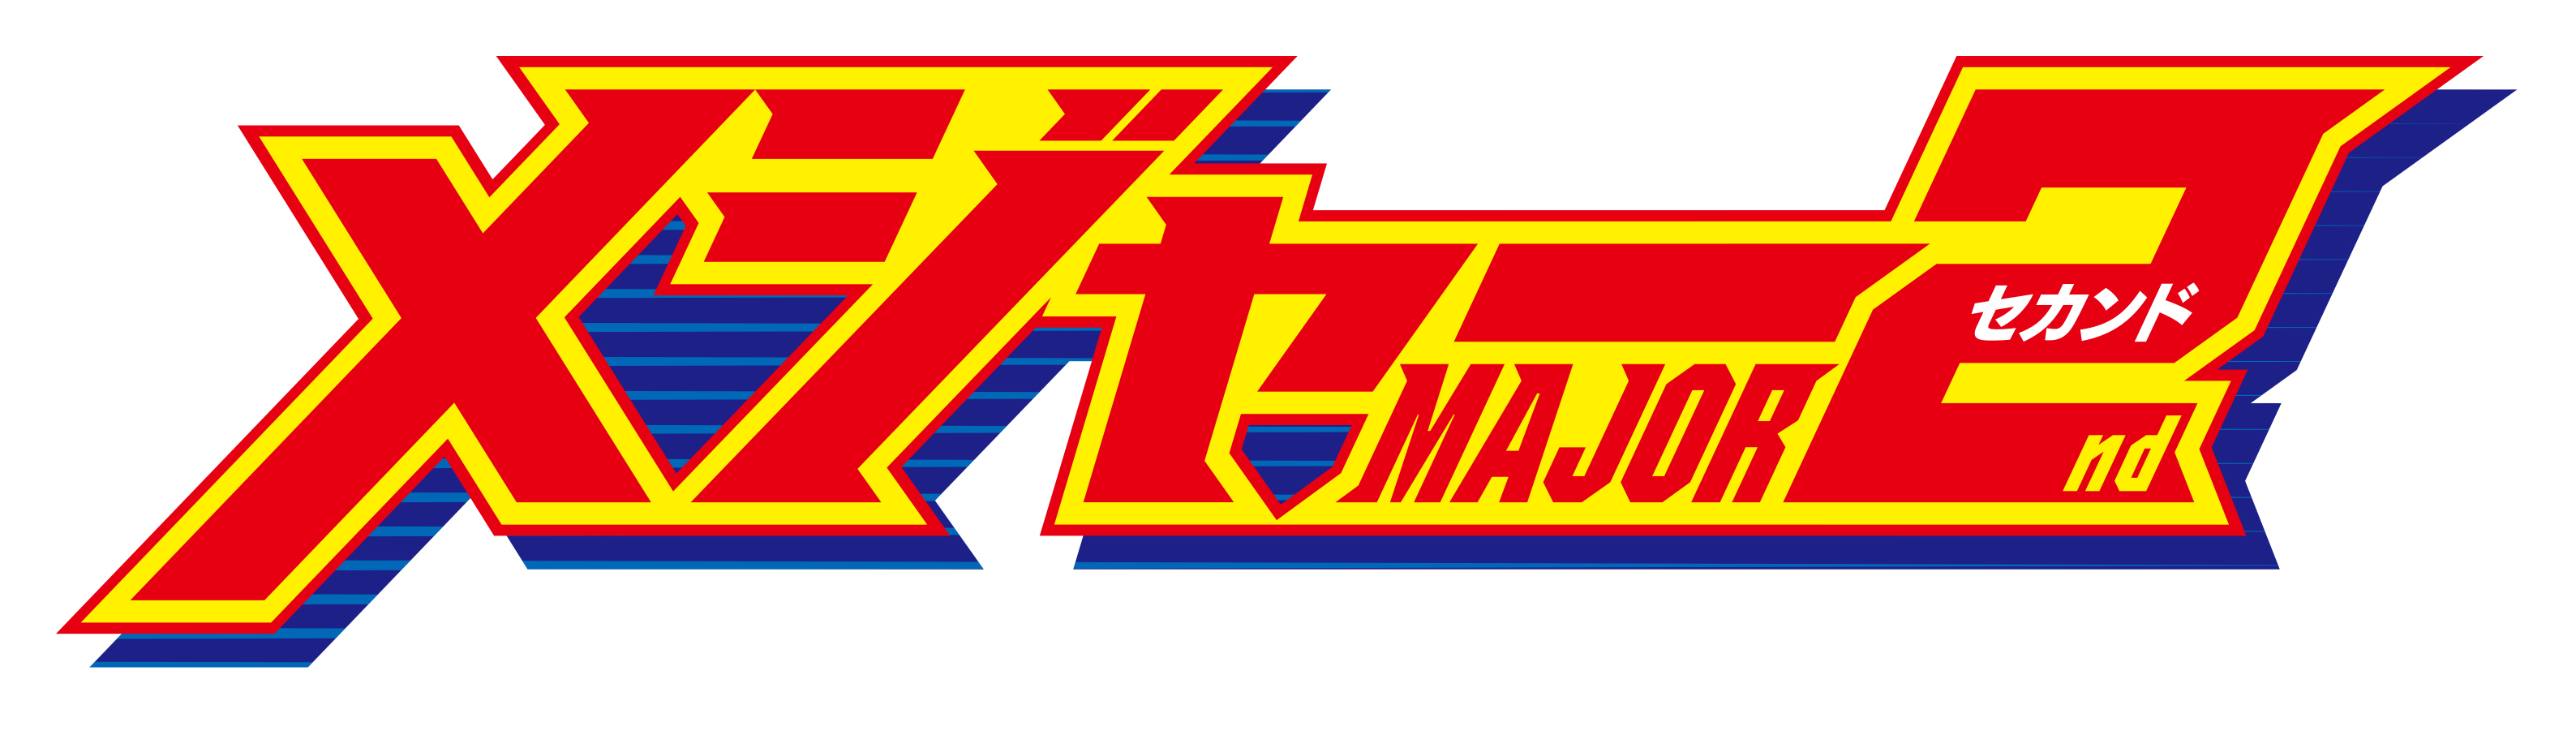 アニメ メジャーセカンド 第2シリーズ放送決定 放送時期は年4月を予定 アキバ総研